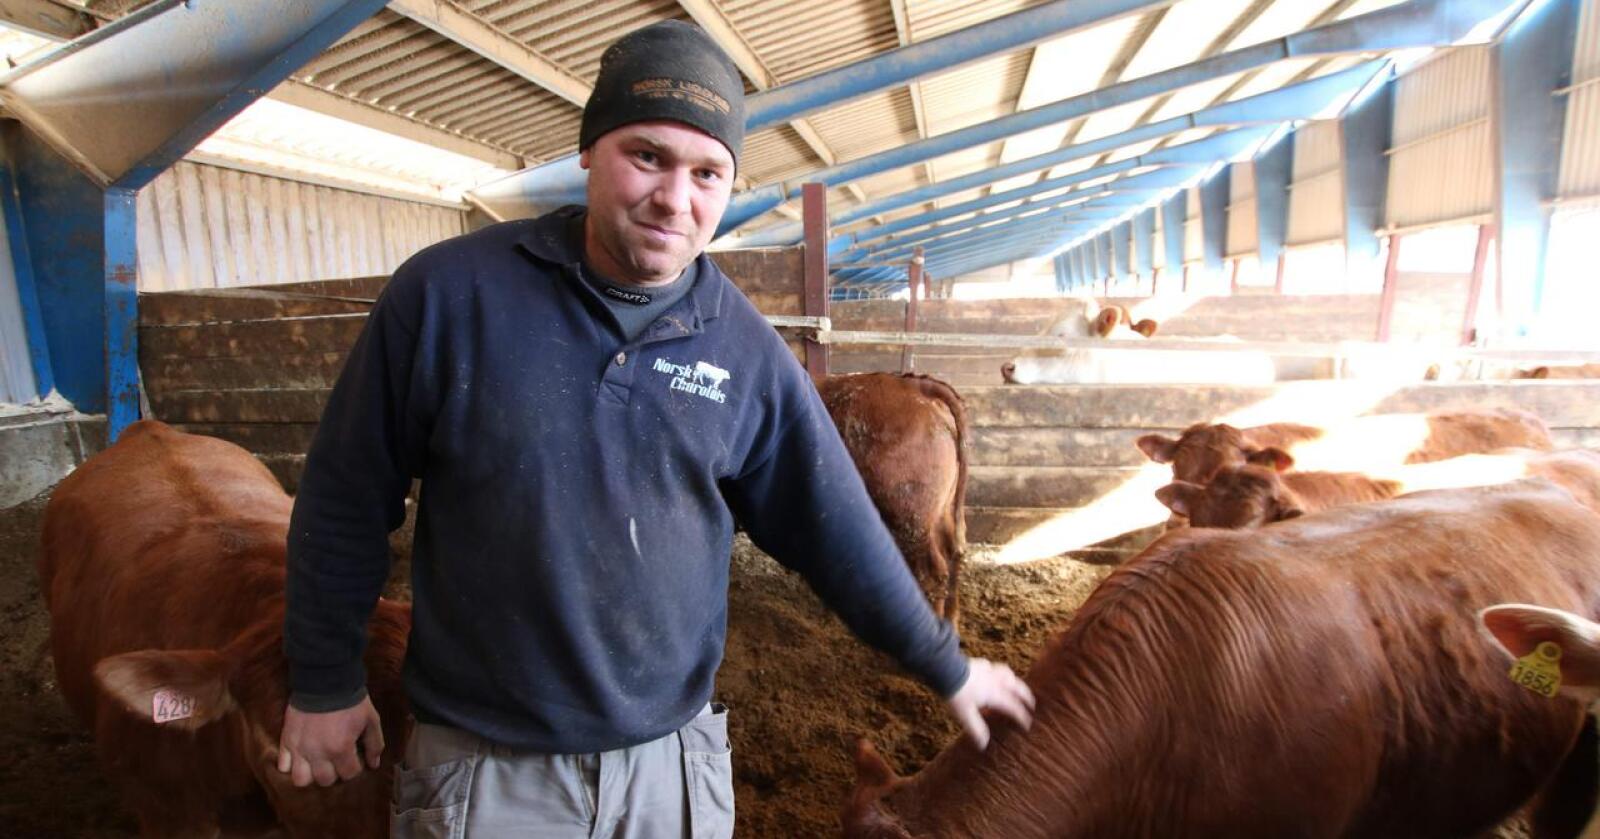 GIR OPP: Kristian Hovde er en av Norges største ammeku- og kjøttfeprodusenter. Nå gir han opp og slakter hele besetningen når kjøttprisen er som høyest i sommer. Foto: Dag Idar Jøsang